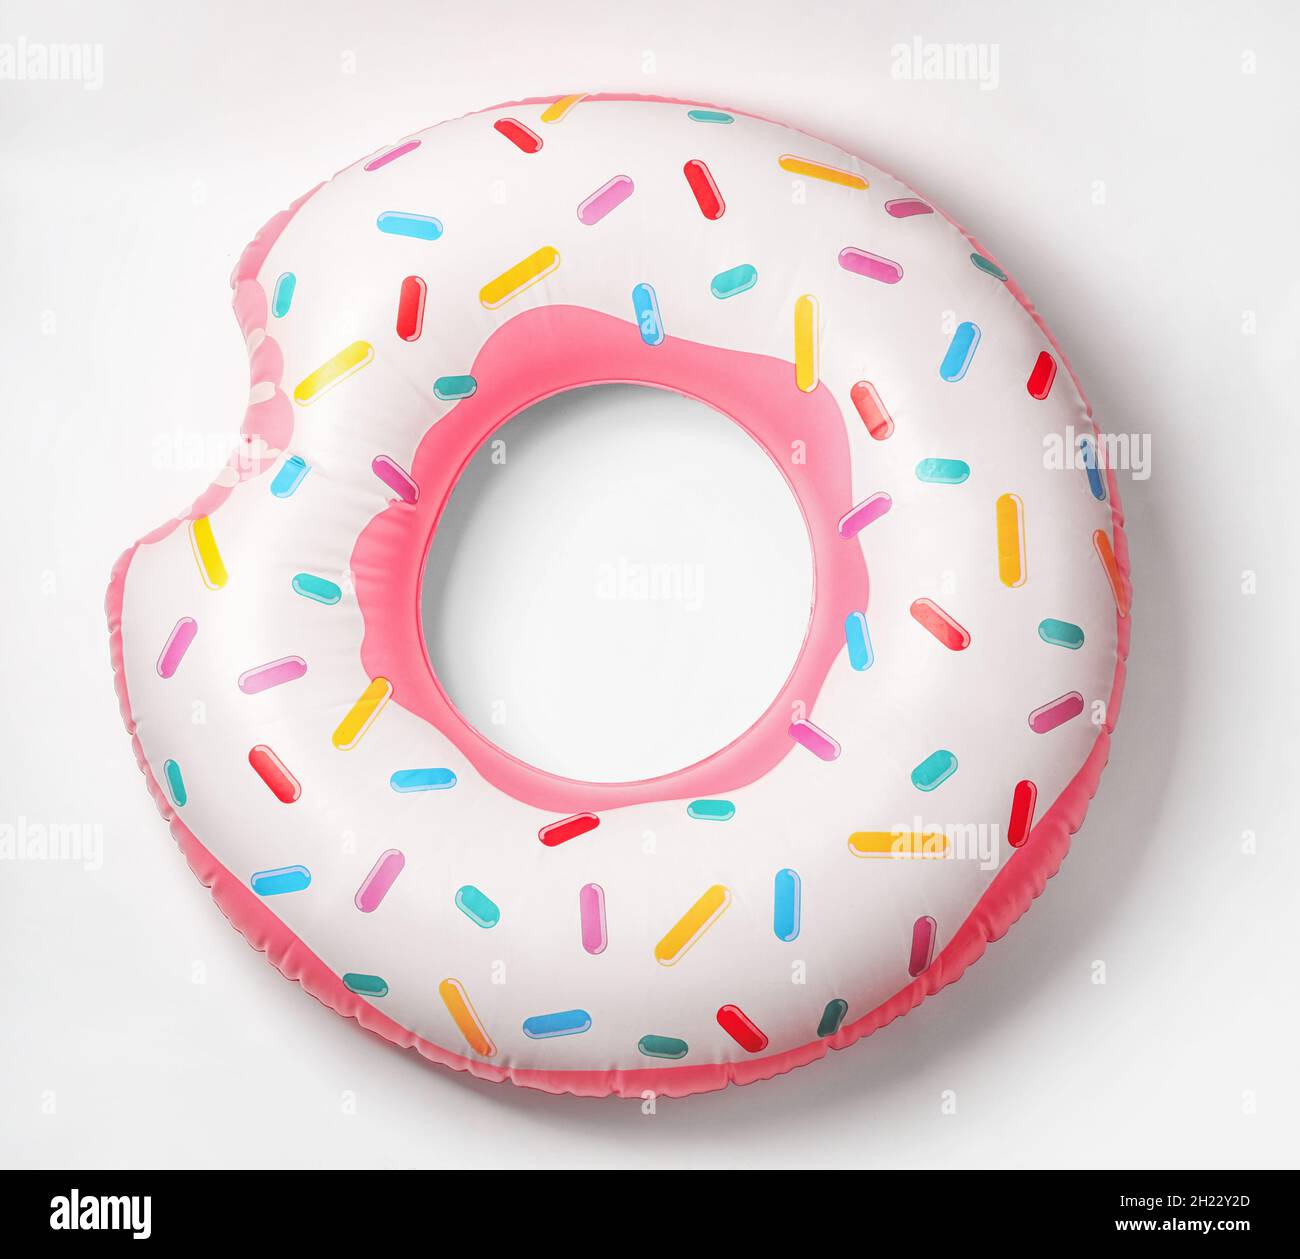 Donut gonflable brillant sur fond blanc.Objet de plage Banque D'Images